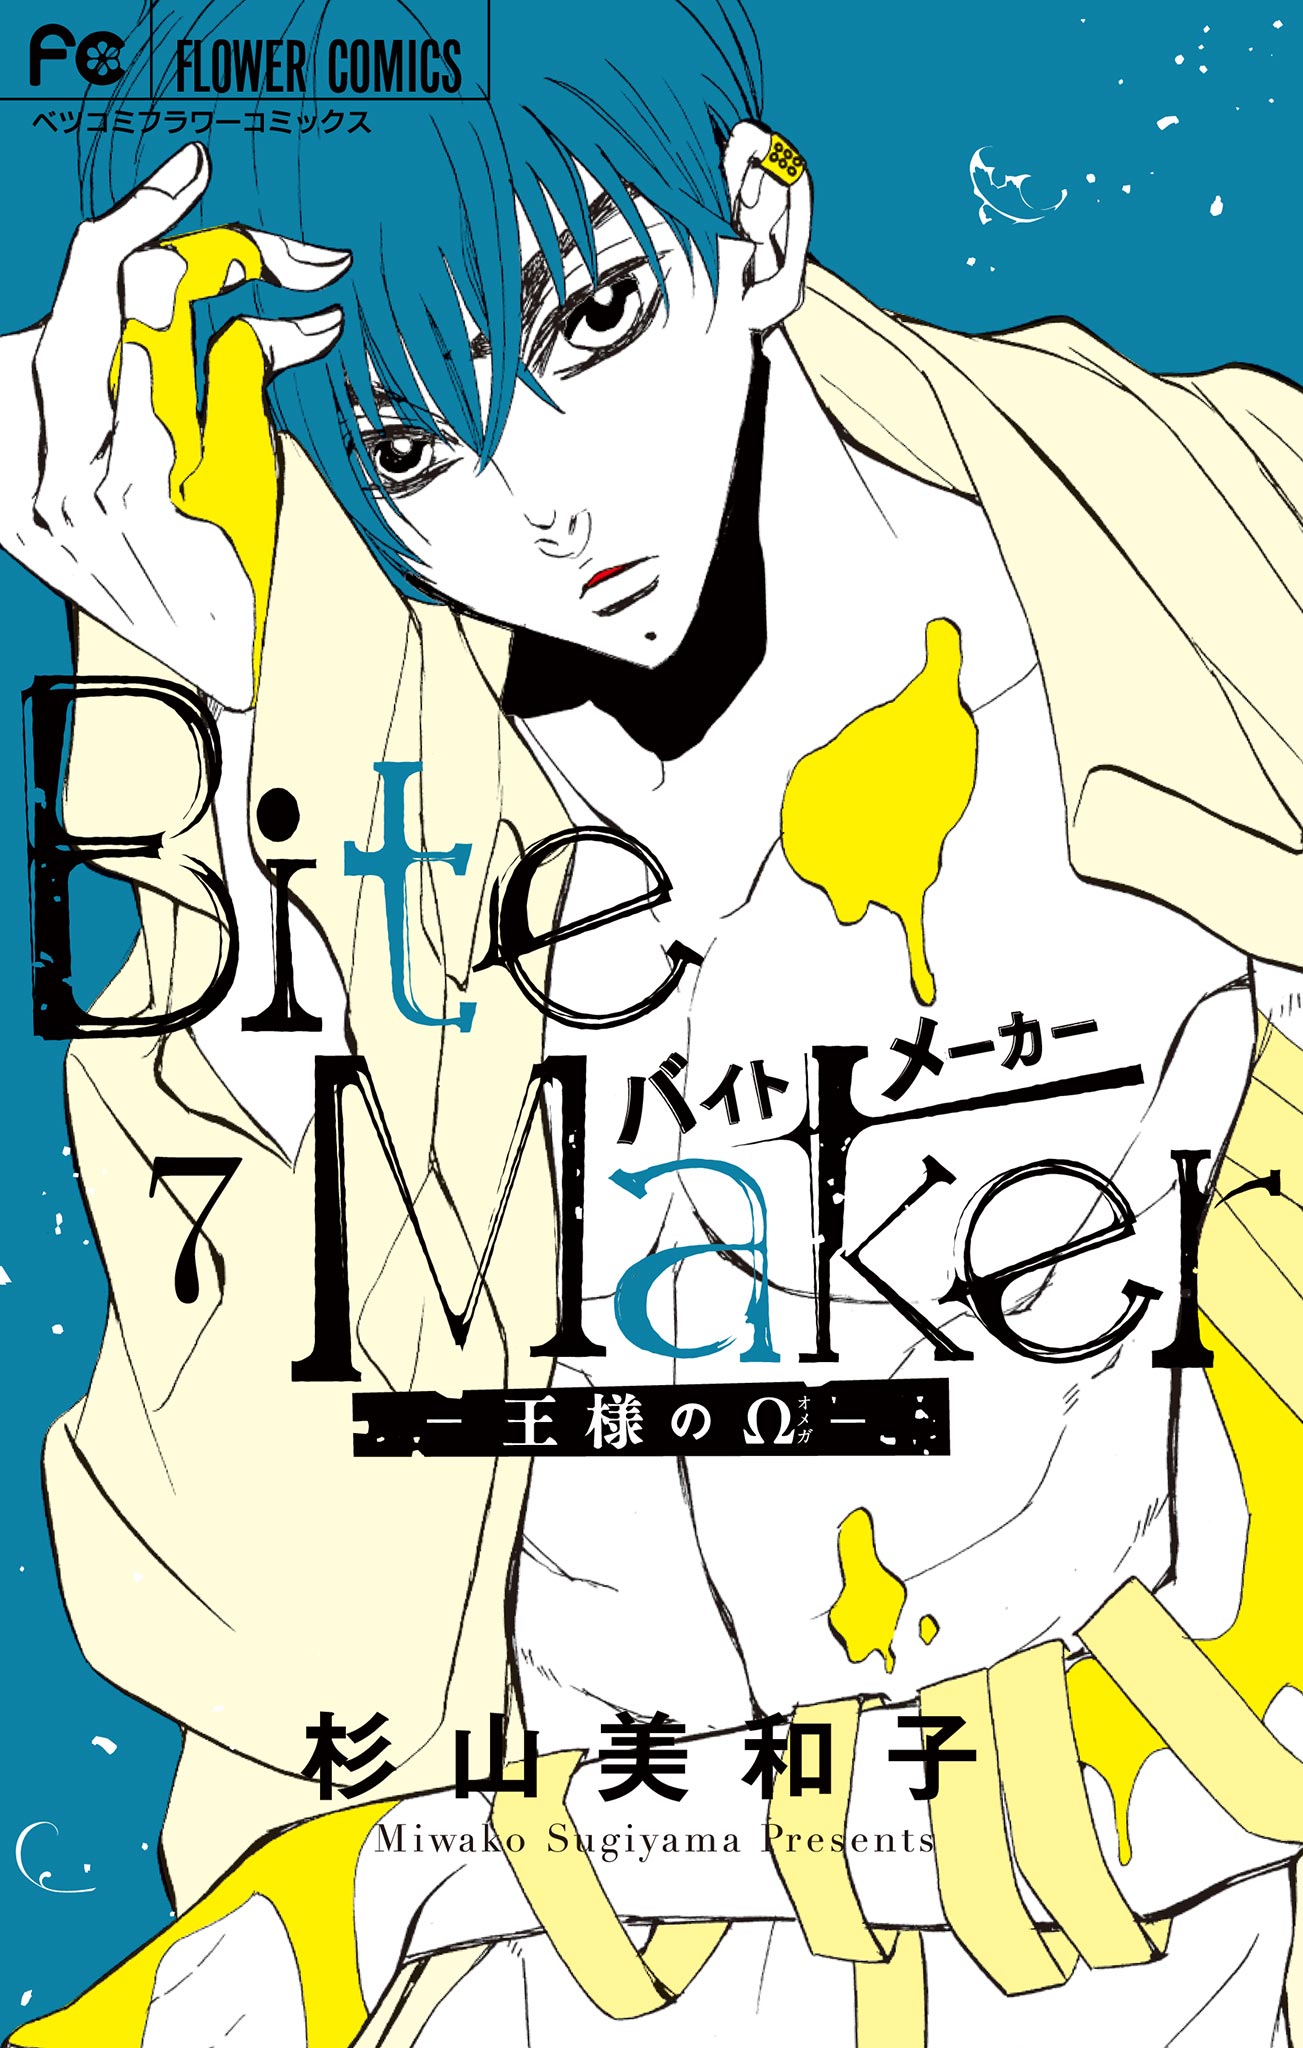 本日超得 杉山美和子先生「Bite Maker〜王様の〜」銀製イヤーカフ Ver 